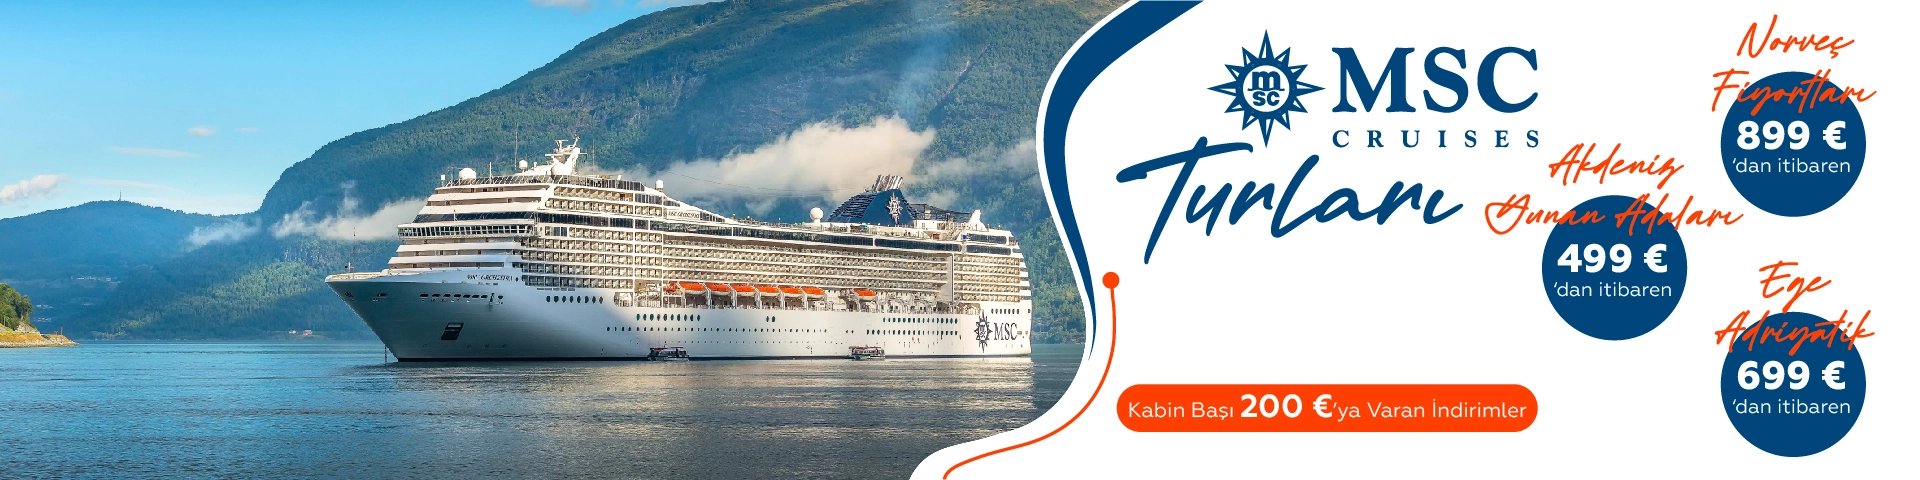 MSC Cruises Turları